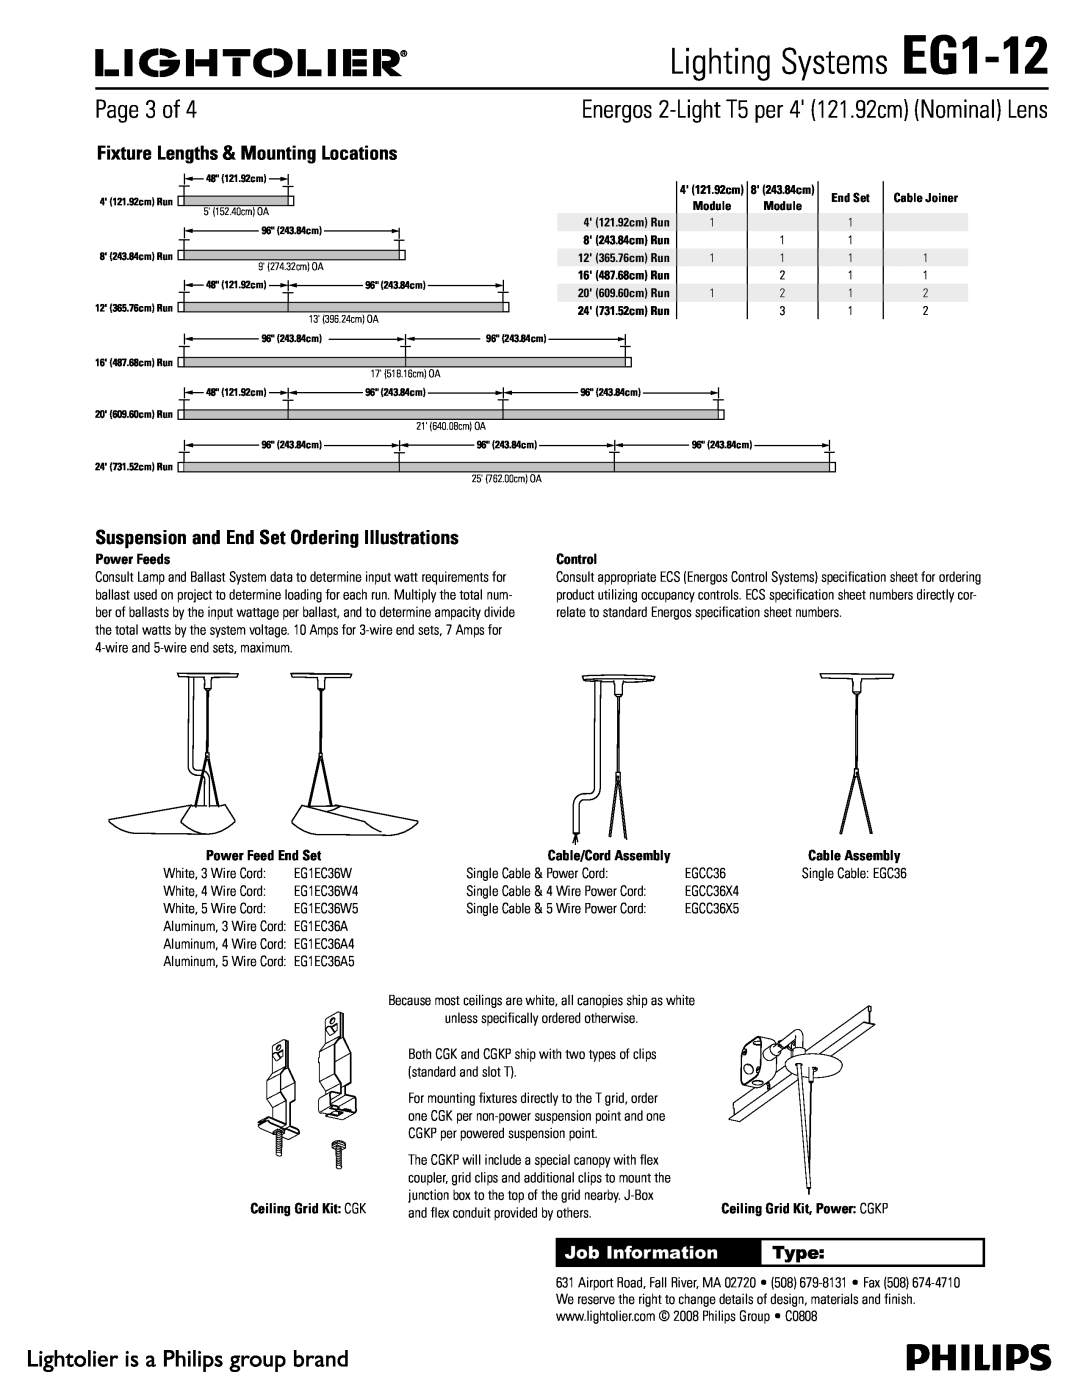 Lightolier Lighting Systems EG1-12, 1BHFPG, Job Information, Type, Ceiling Grid Kit $, 4 121.92cm Run, End Set 